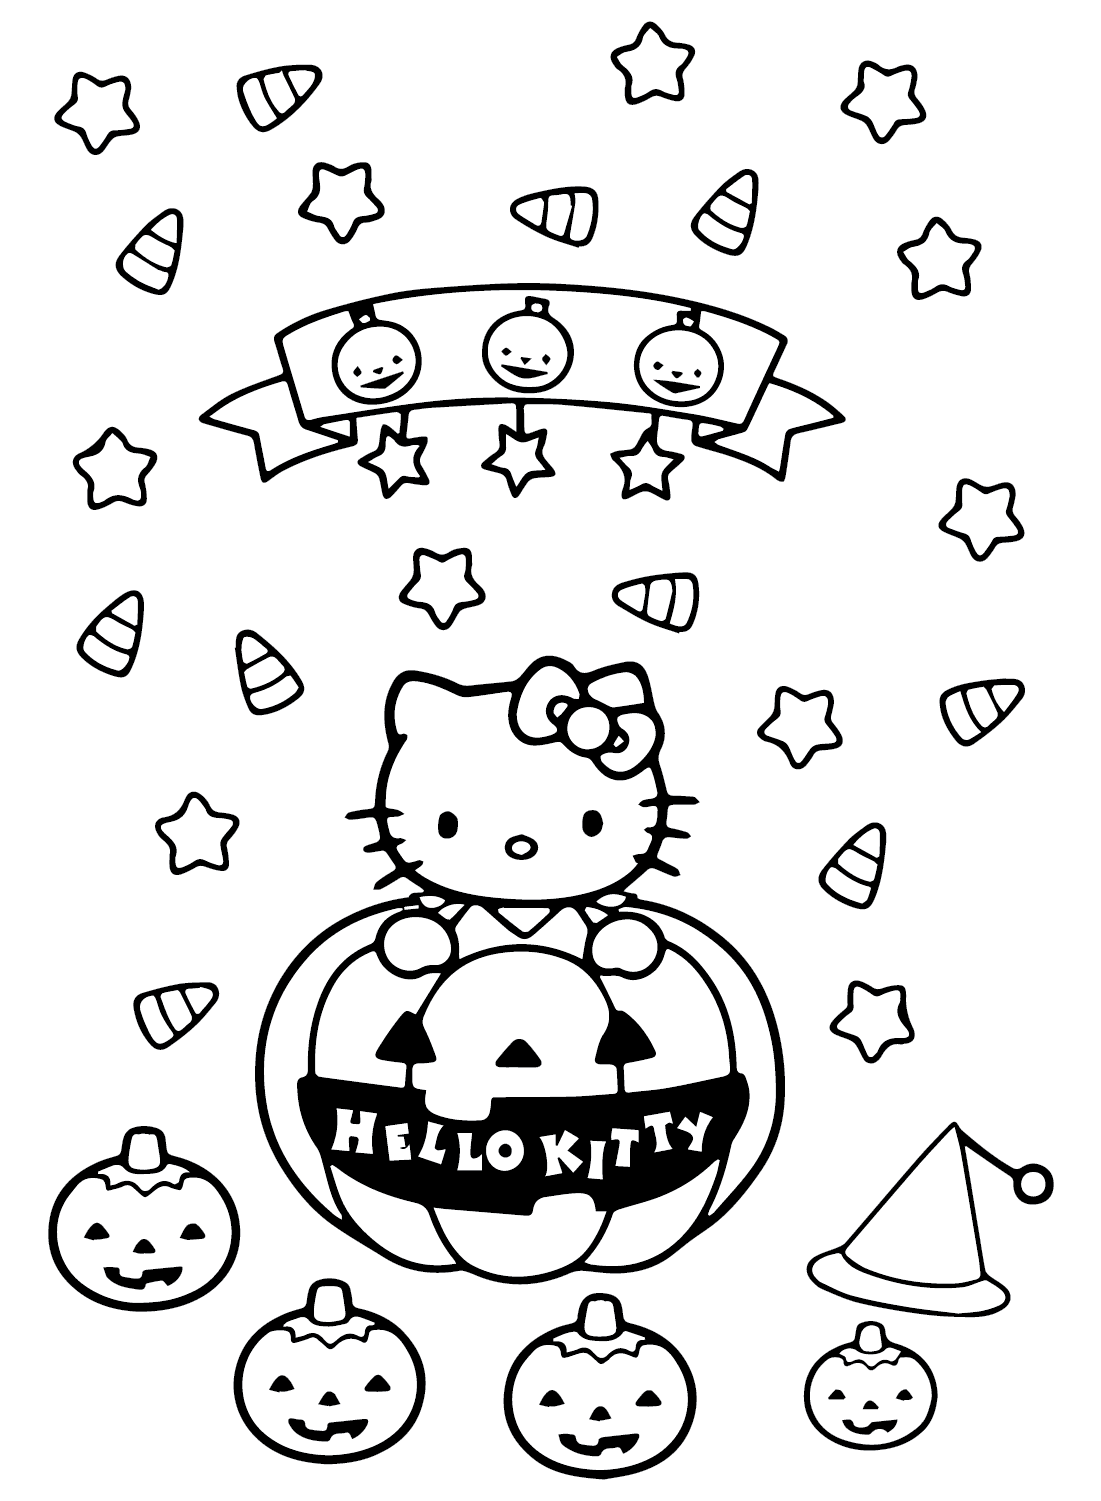 万圣节 Hello Kitty 的免费着色页可从万圣节 Hello Kitty 打印